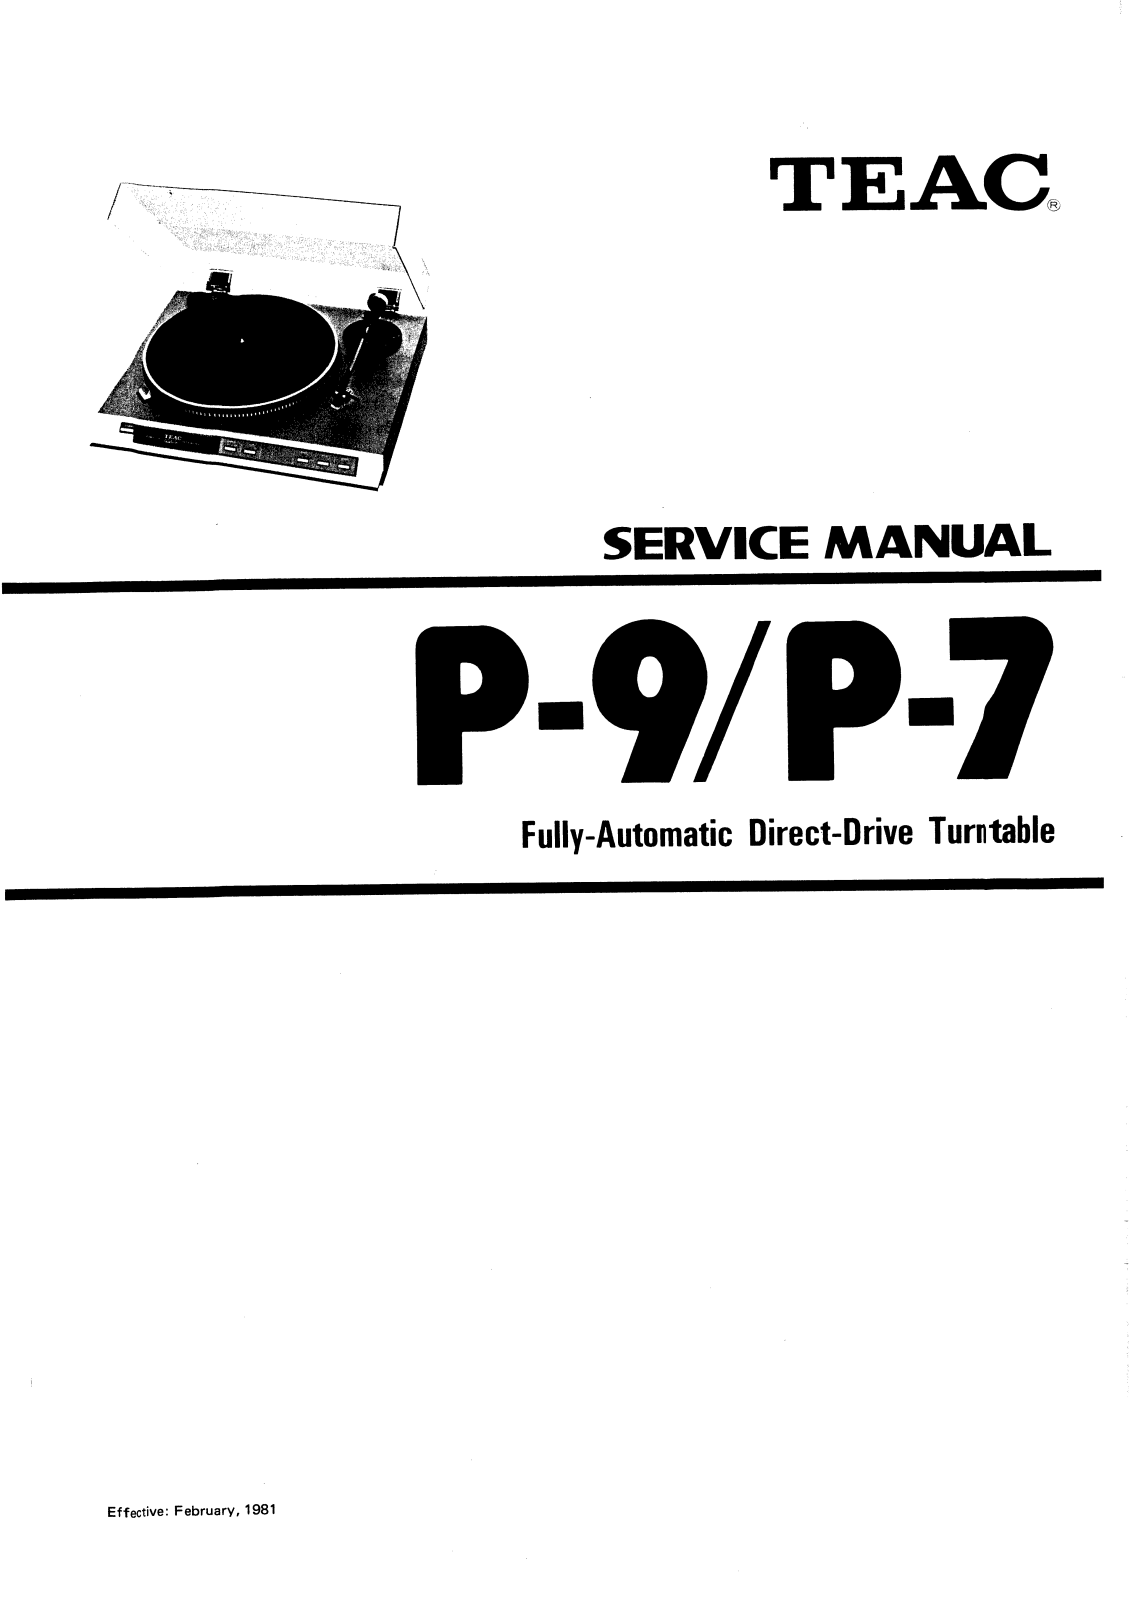 Teac P-7 Service Manual